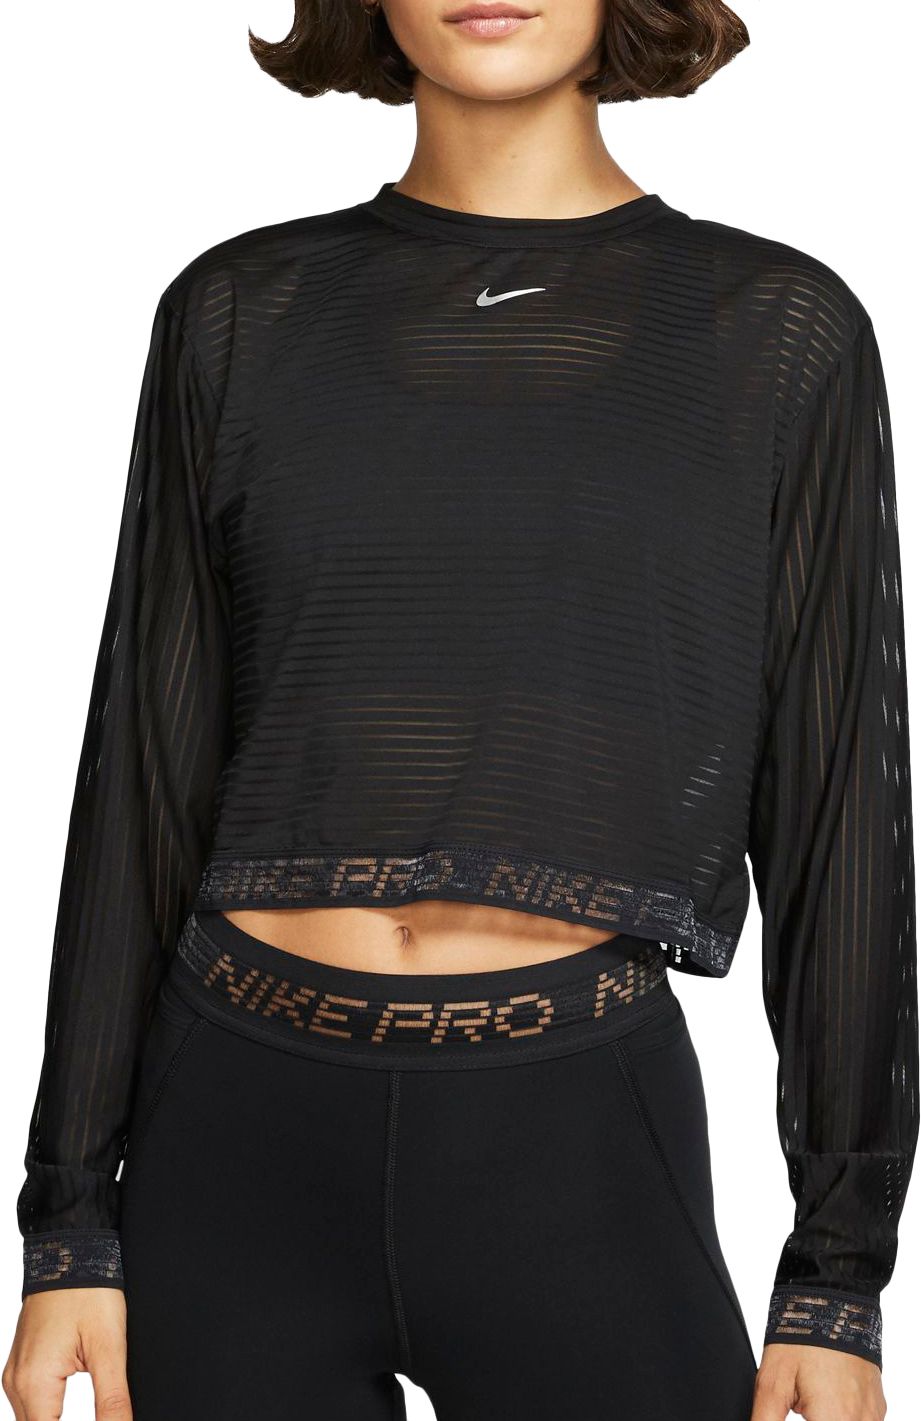 nike women's pro mesh long sleeve shirt